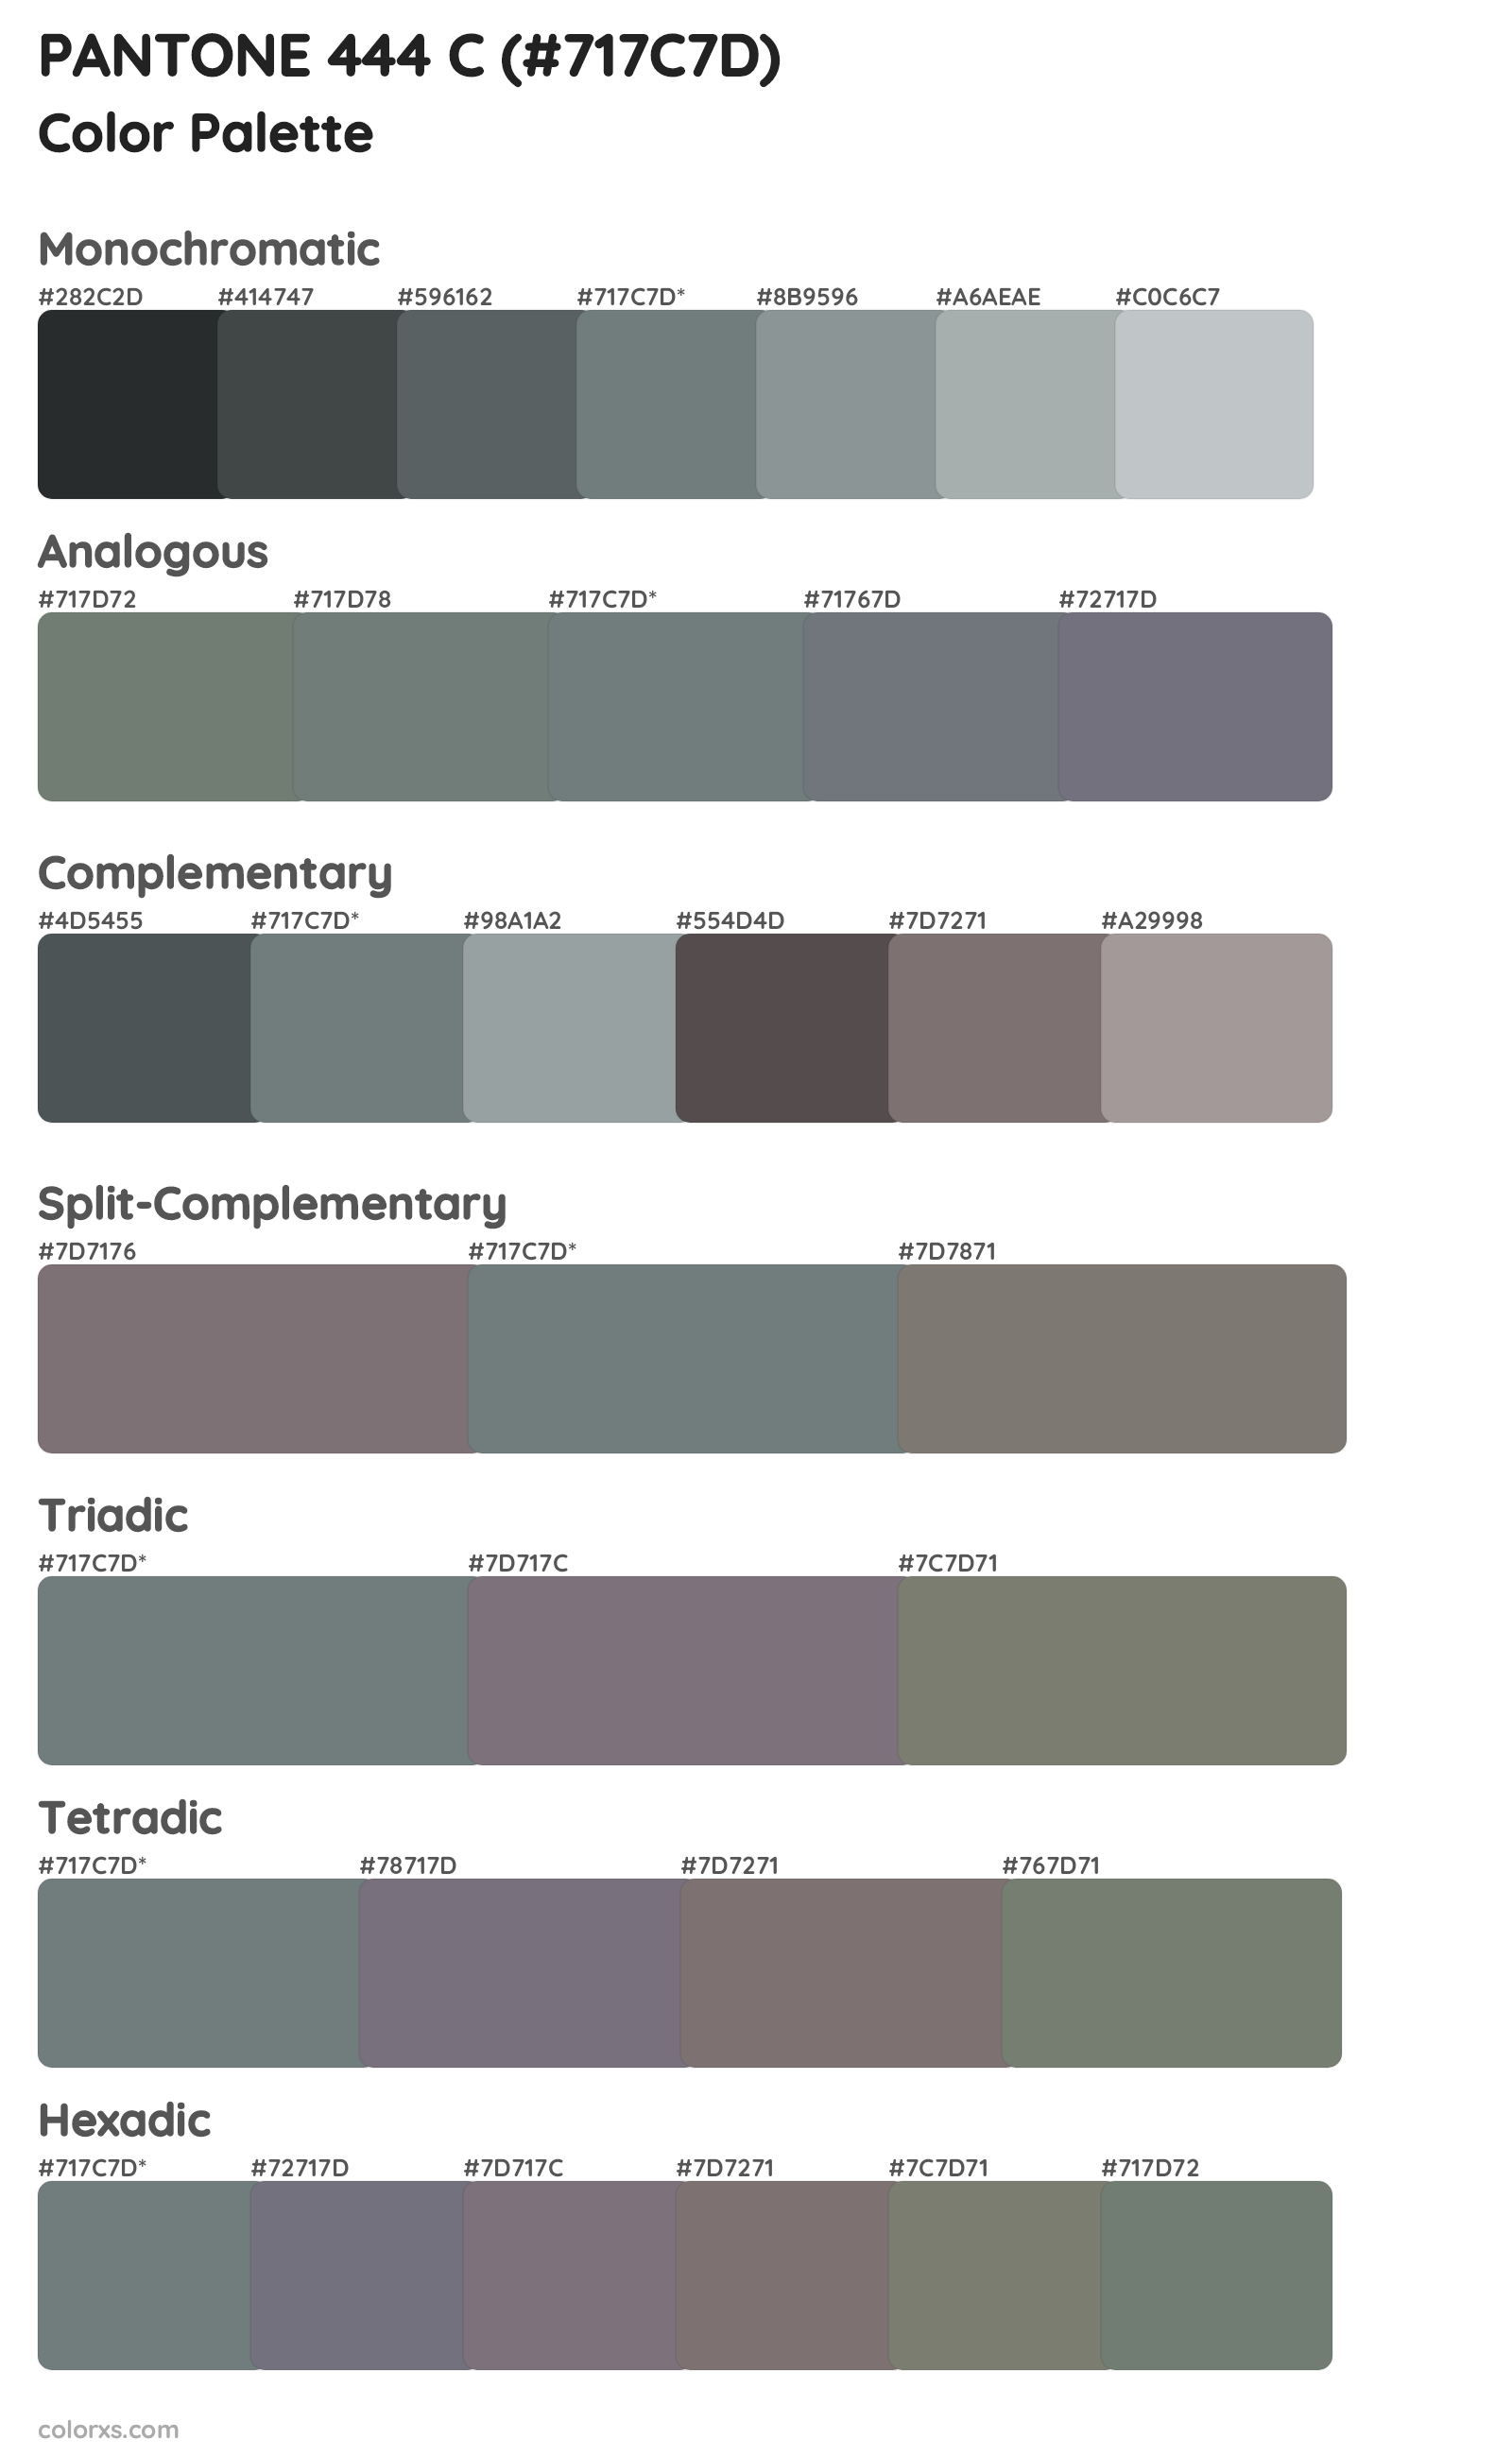 PANTONE 444 C Color Scheme Palettes